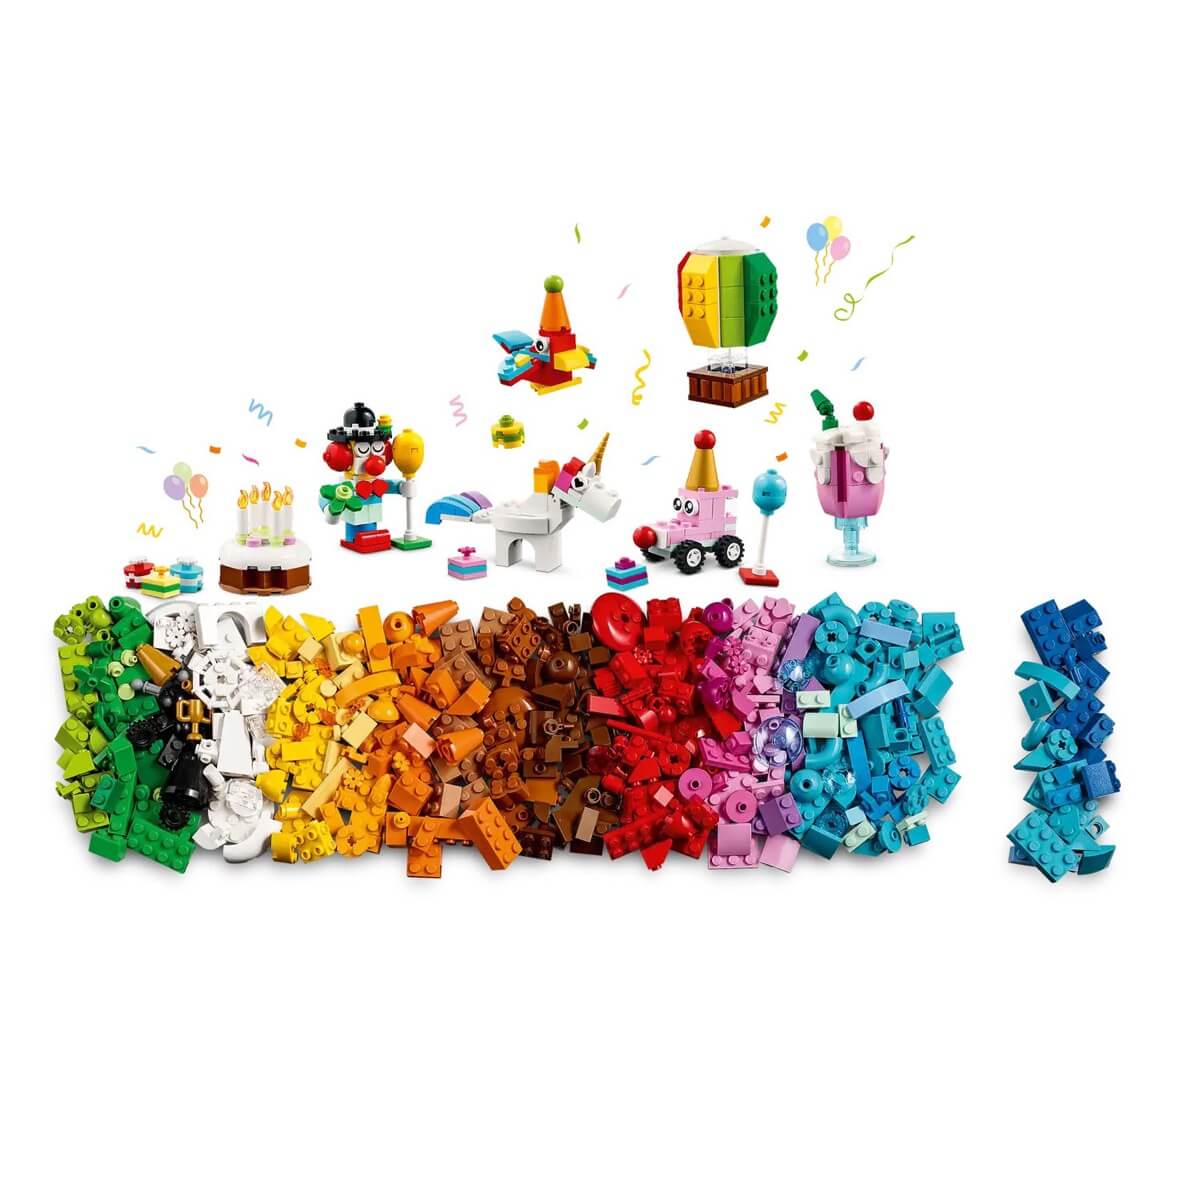 Une Licorne Lego Avec Des Arcs-en-ciel Colorés Sur La Tête Se